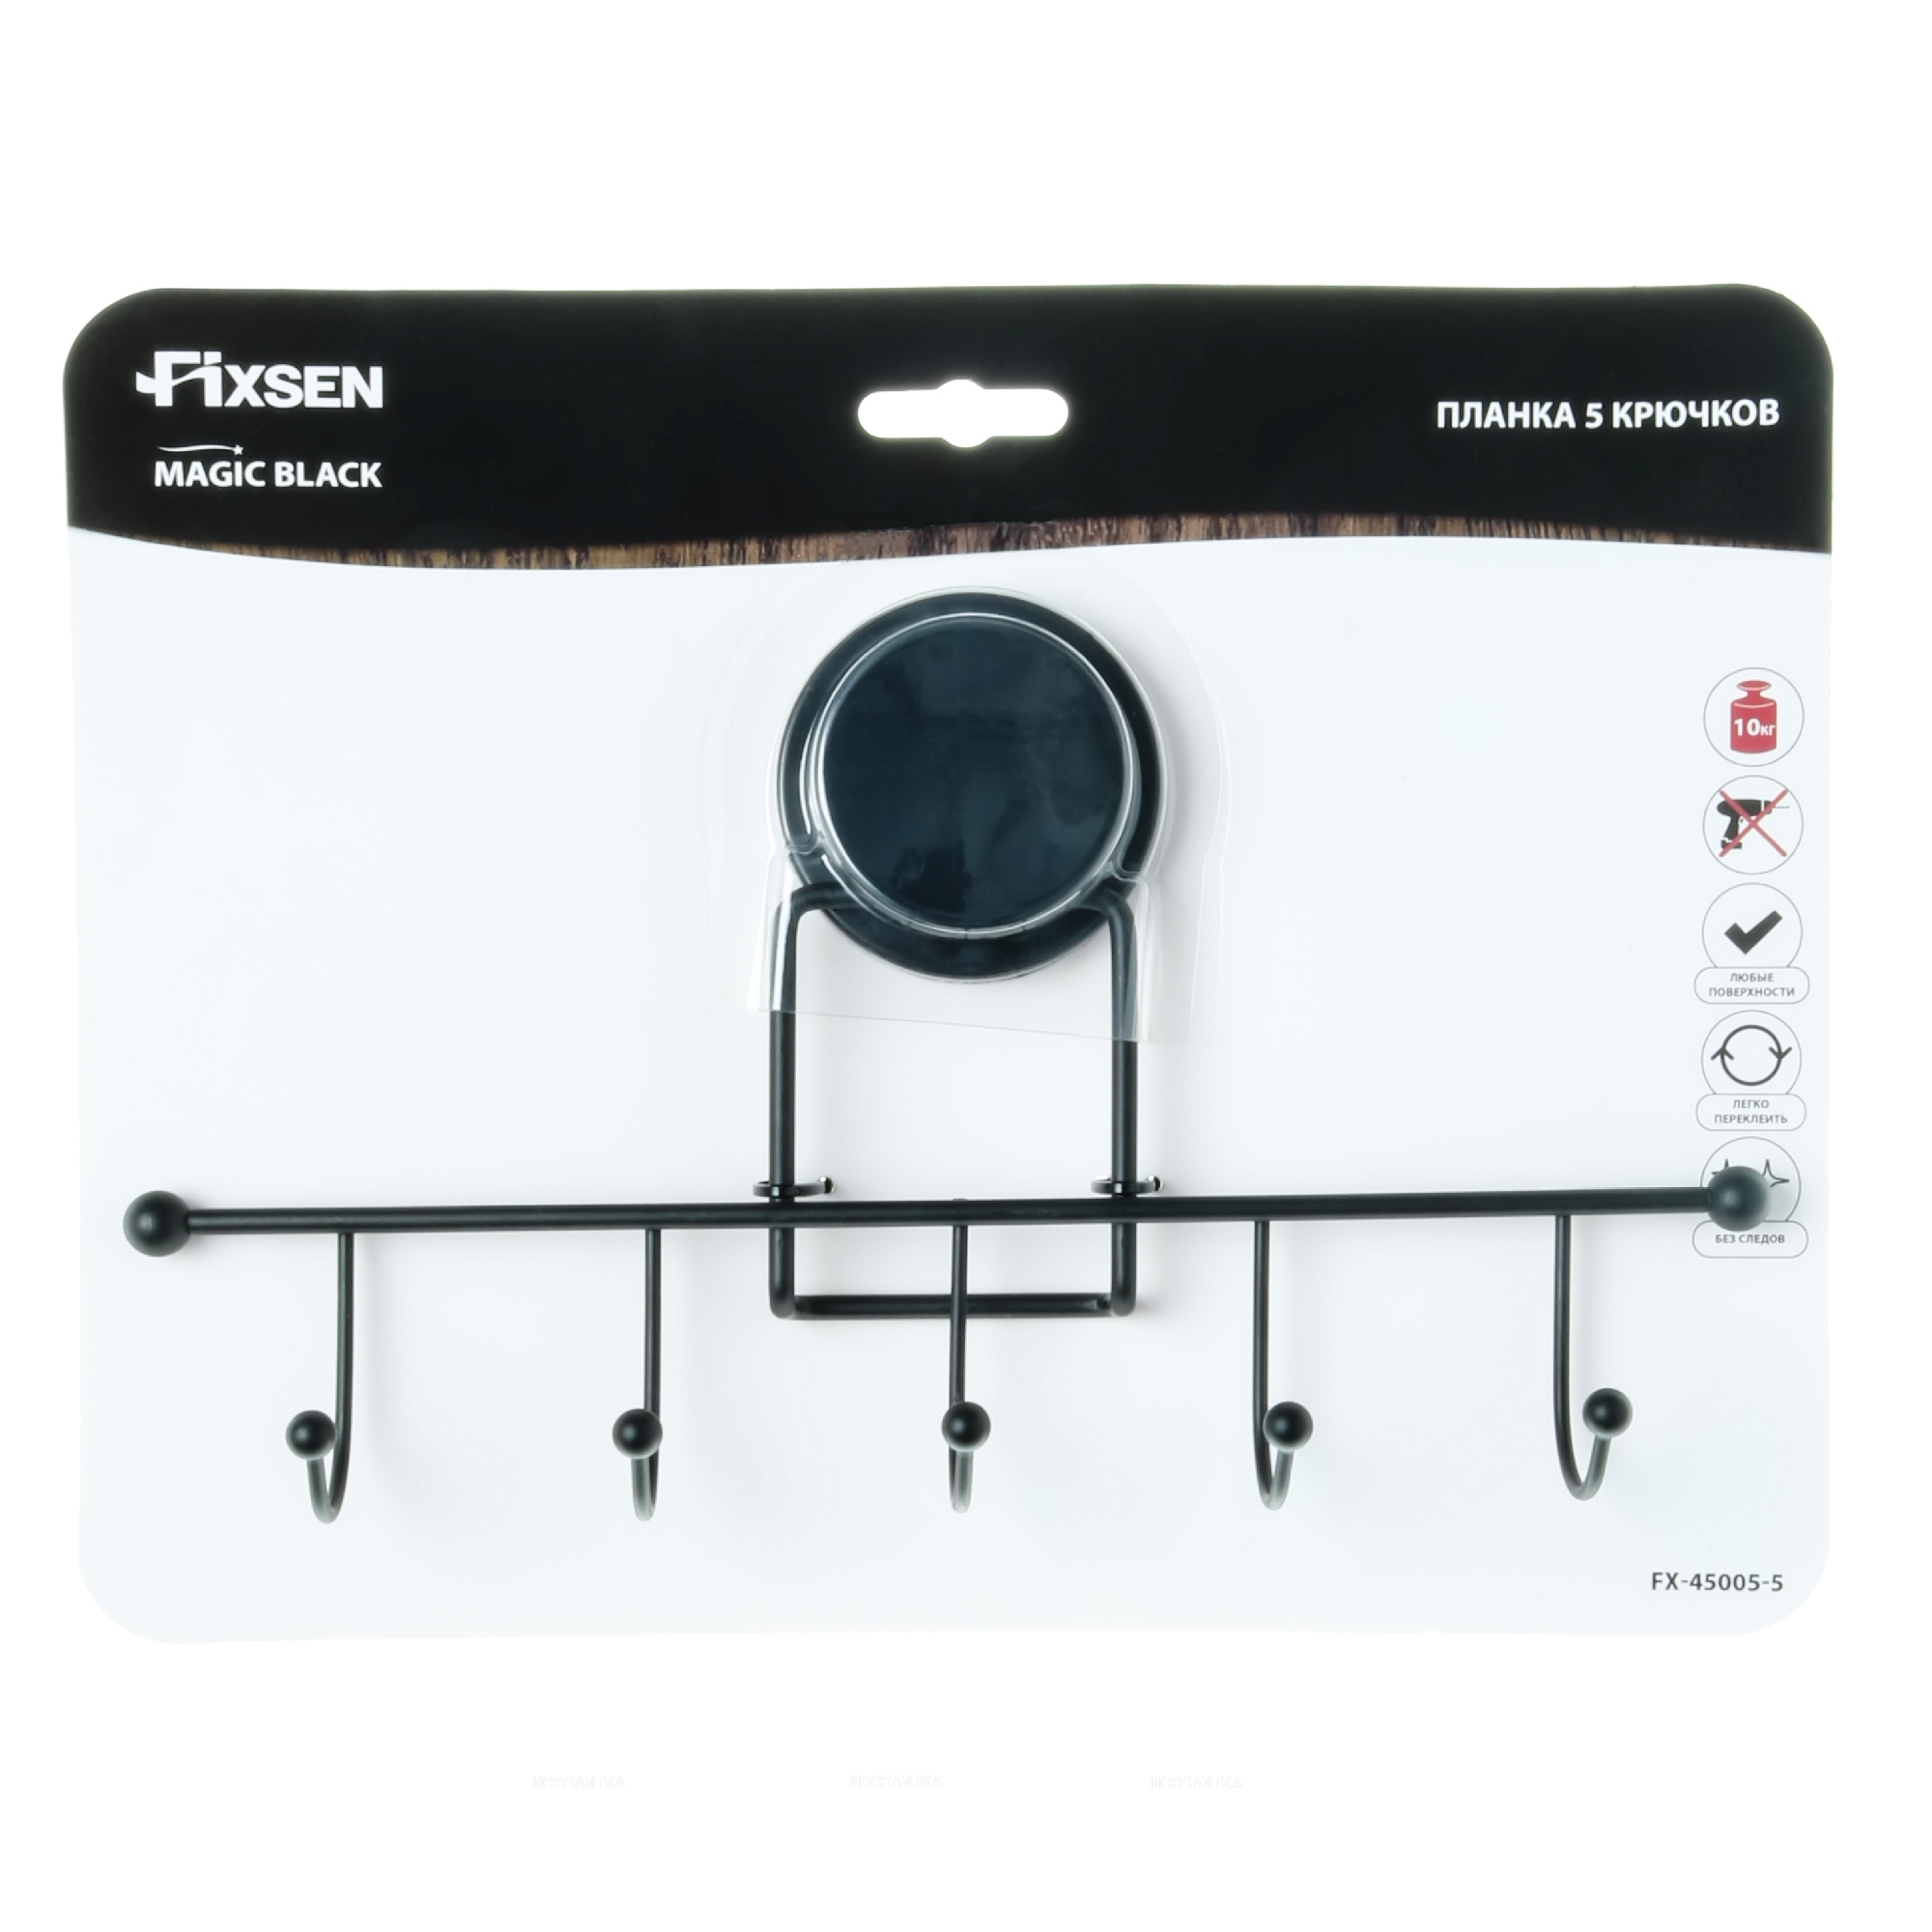 Планка Fixsen 5 крючков Magic Black FX-45005-5 - изображение 3